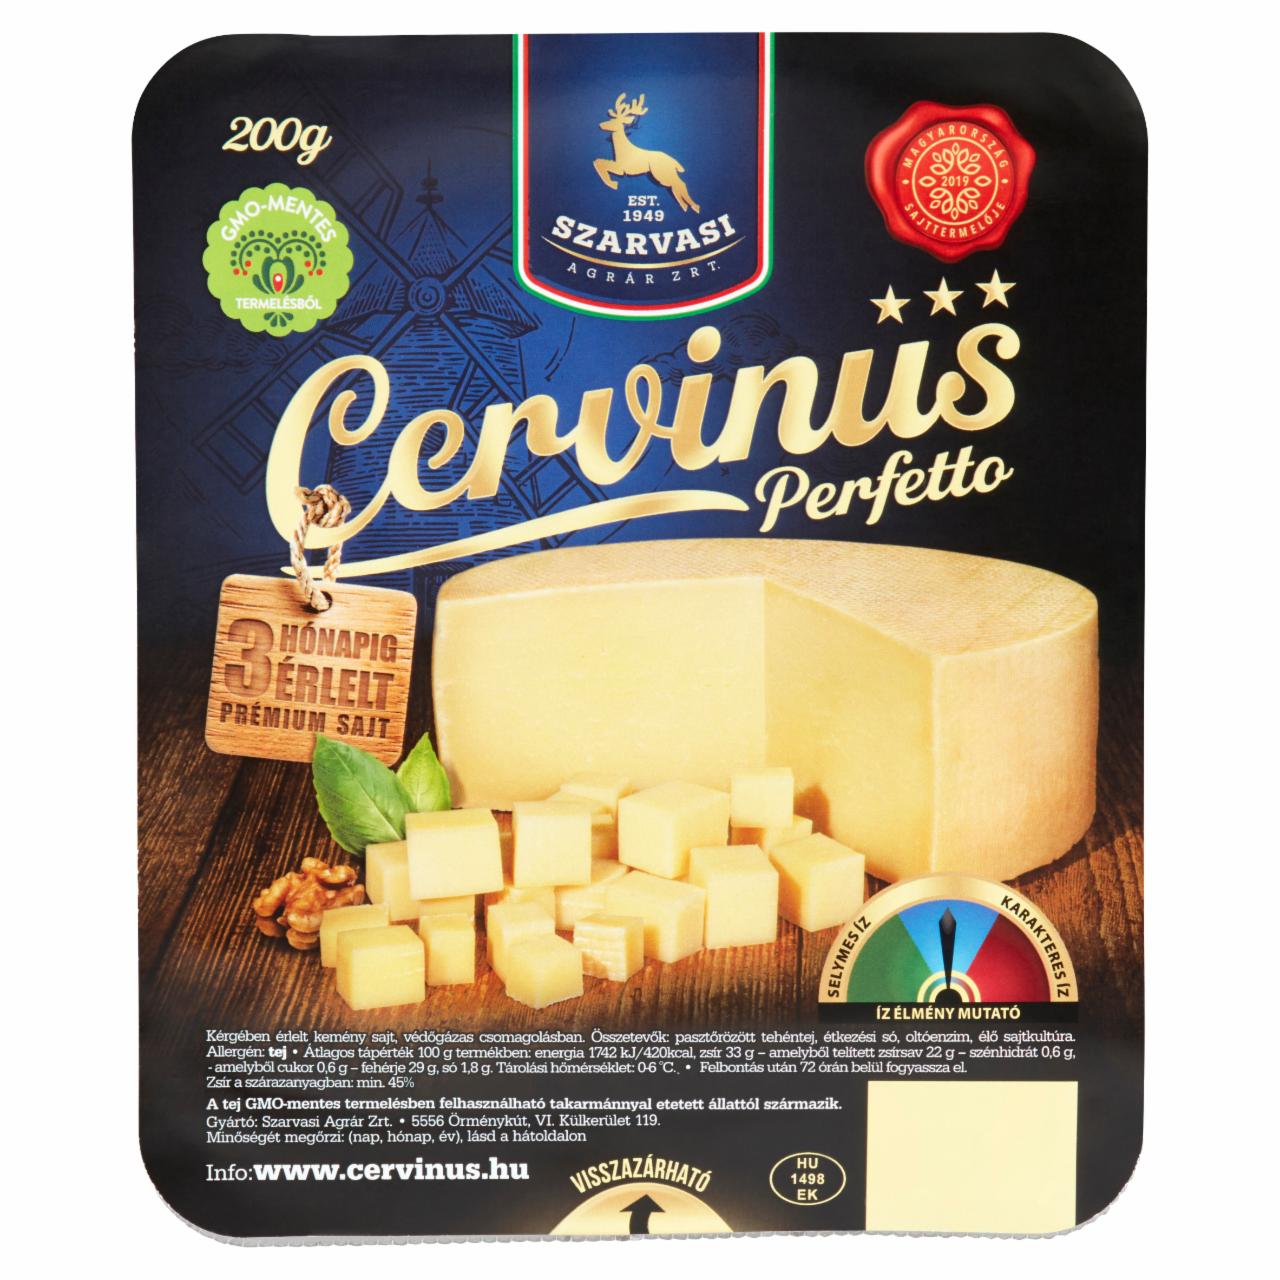 Képek - Szarvasi Cervinus Perfetto kérgében érlelt kemény sajt 200 g